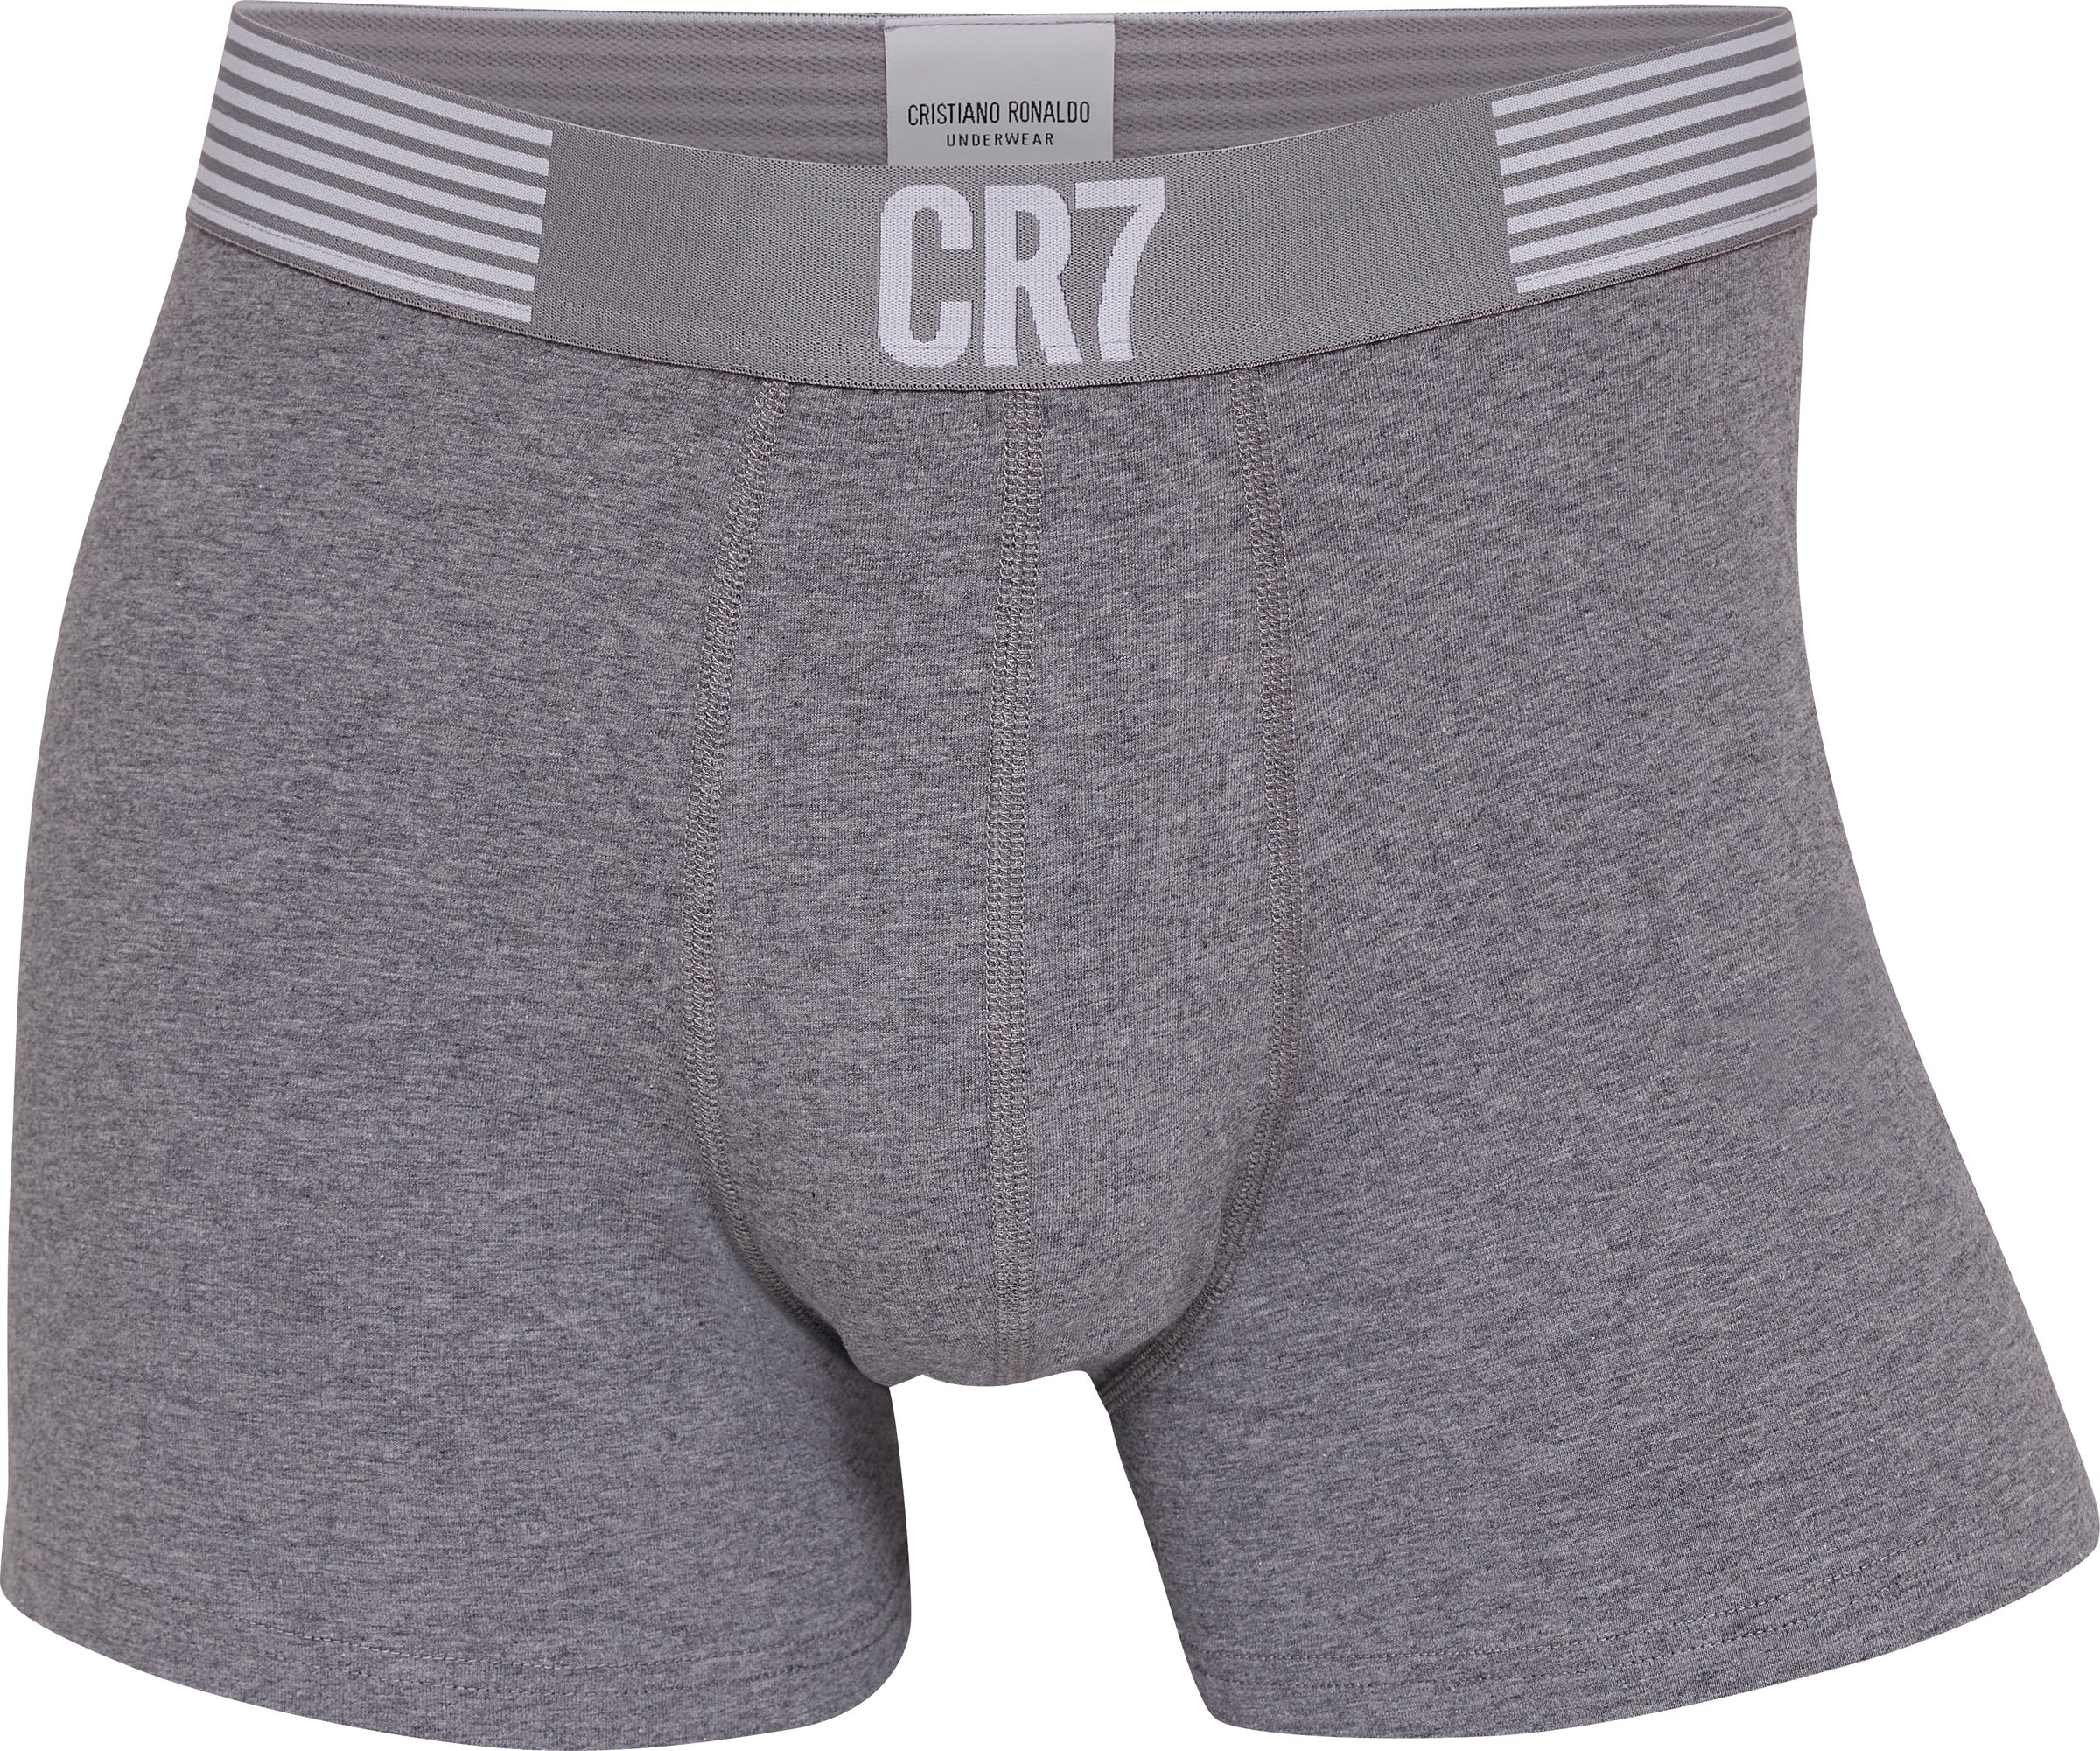 CR7 Cristiano Ronaldo Men's Trunks, Black, Grey, Blue, XL price in